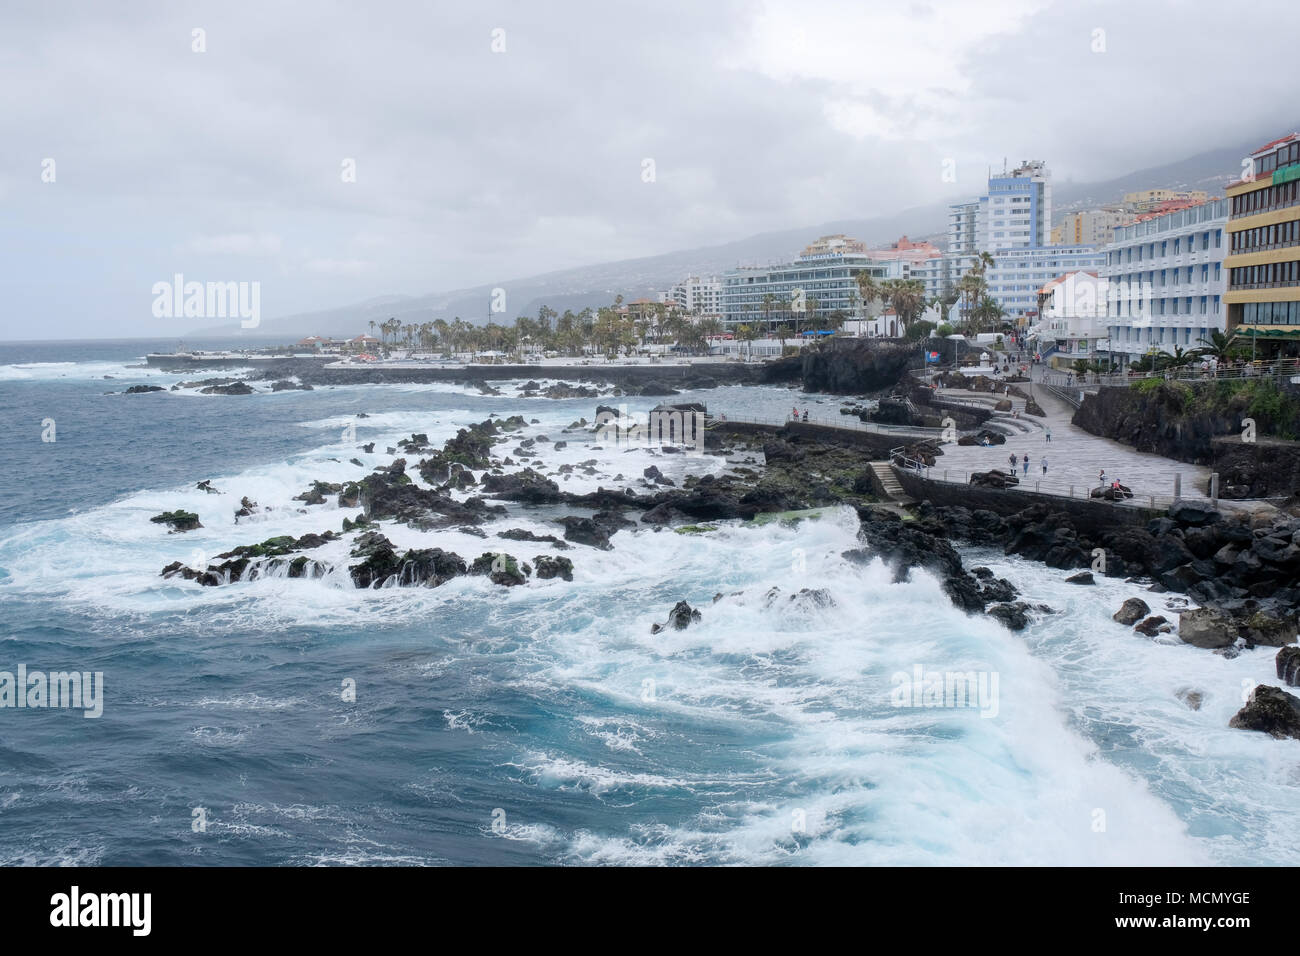 Puerto de la Cruz, Tenerife, Canaries ; mer agitée sur le front de mer bien entretenu comme le vent se lève à partir de l'arrivée d'une tempête. Banque D'Images